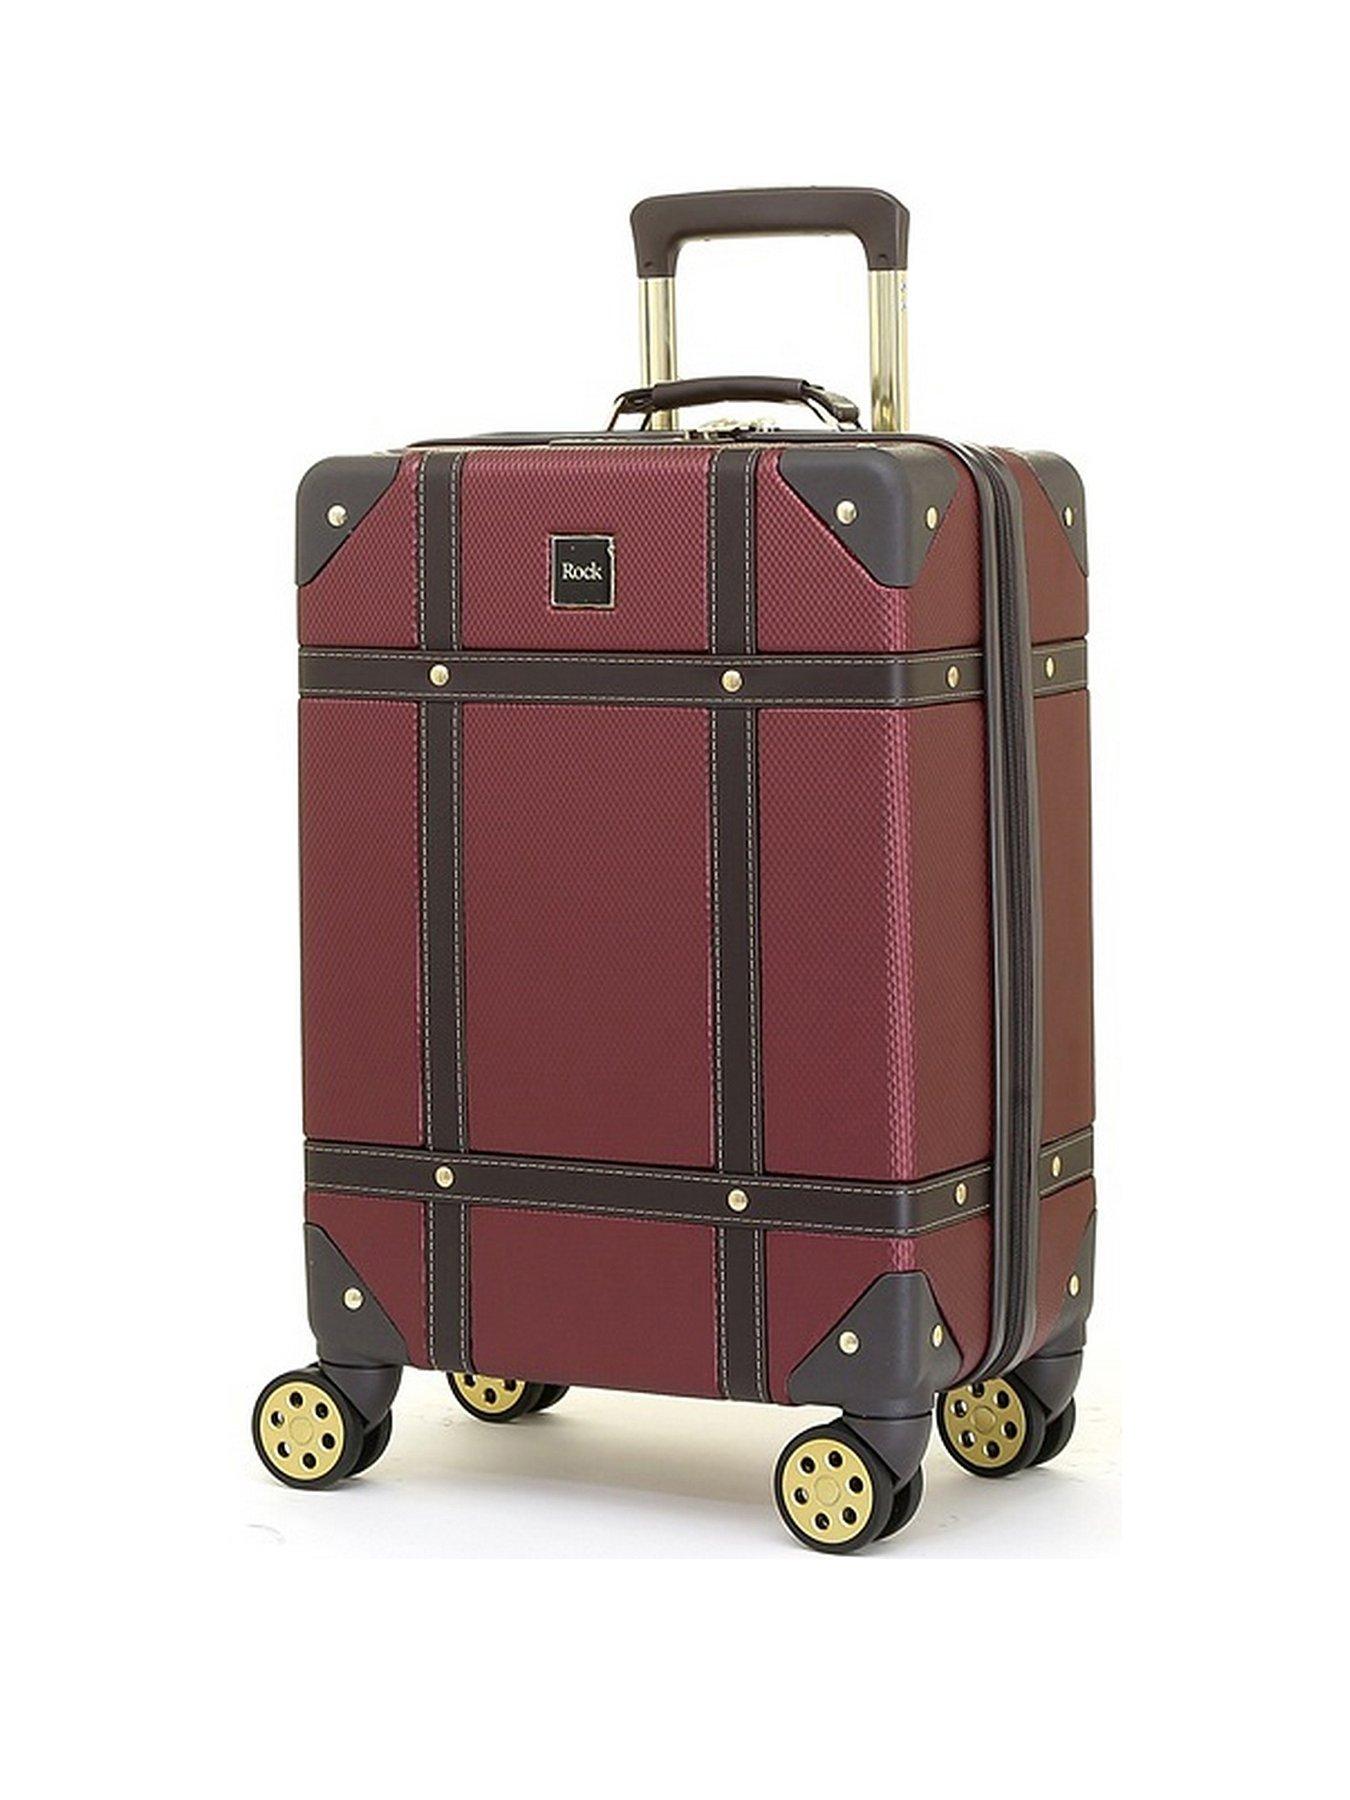 Designer Vintage Trunk Combination Luggage Sets of 2 Piece, Hard